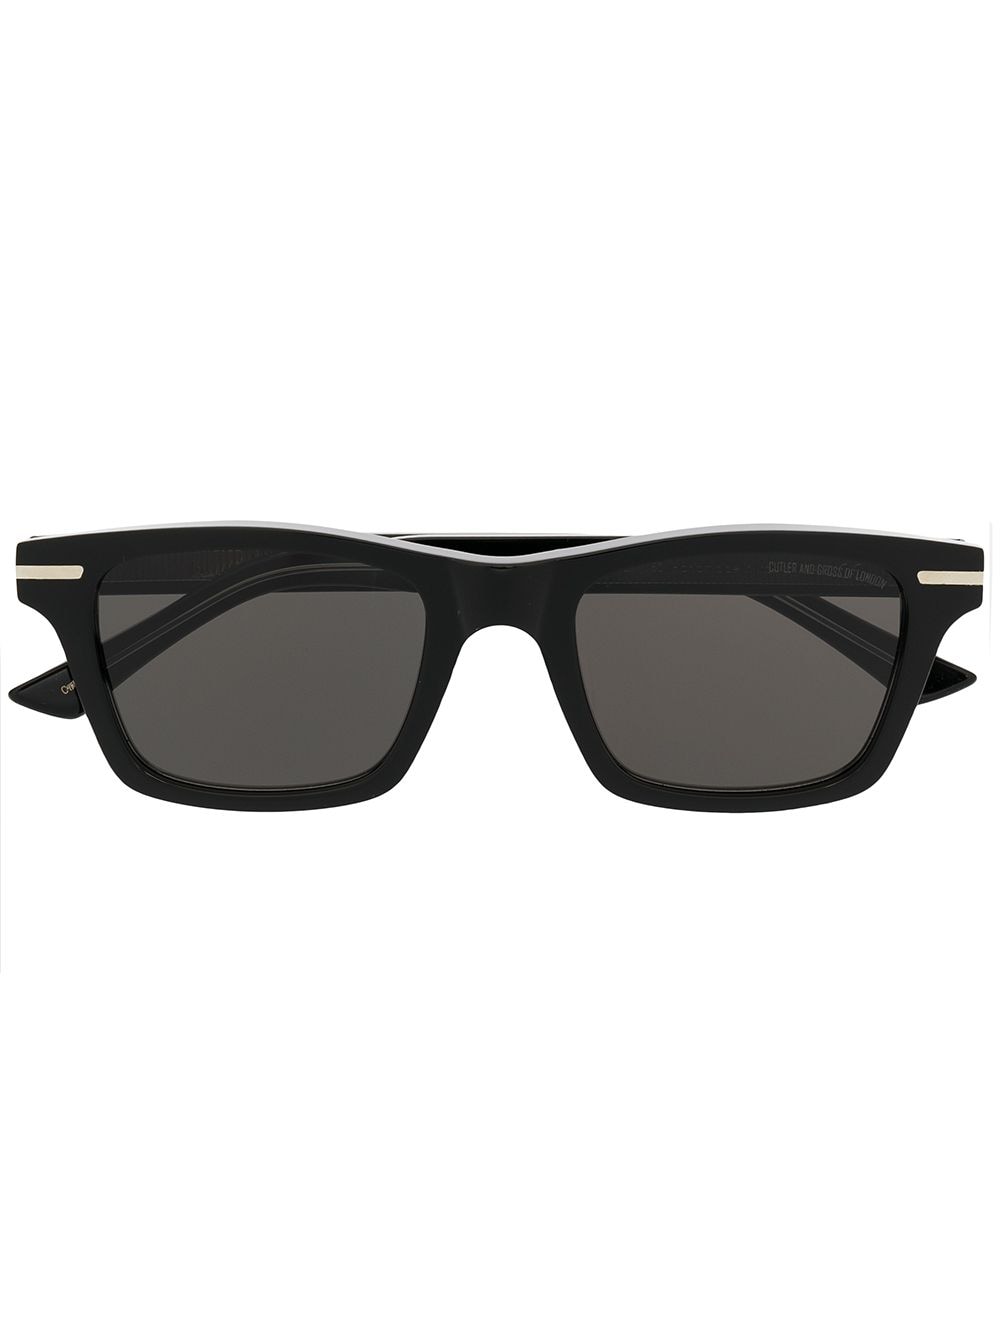 фото Cutler & gross солнцезащитные очки 1337 в квадратной оправе